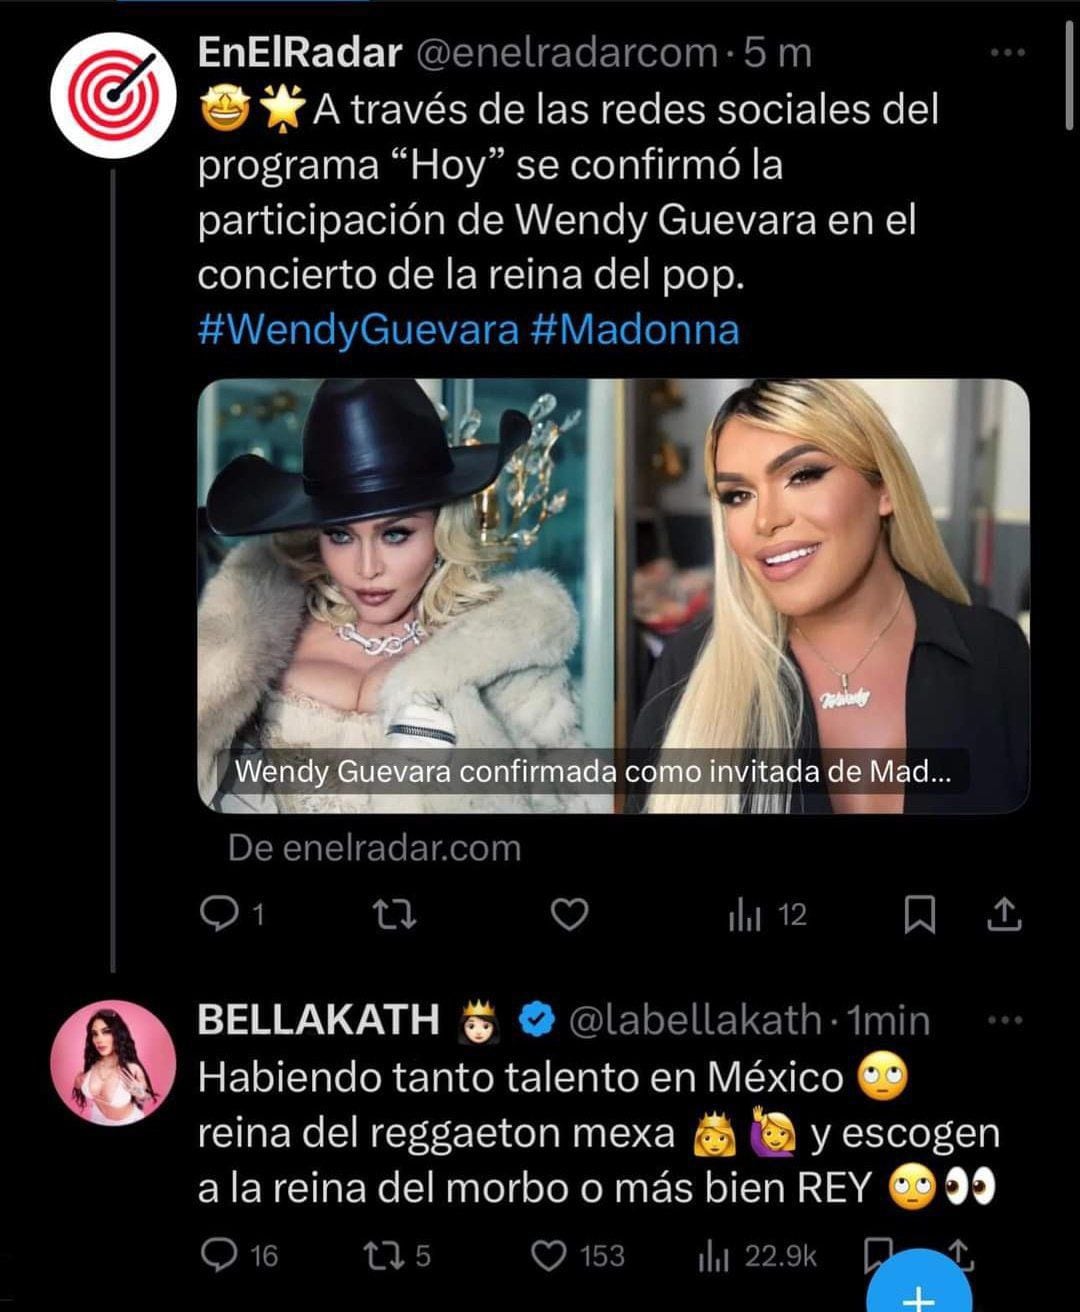 Supuesto tweet de Bellakath sobre Wendy Guevara.